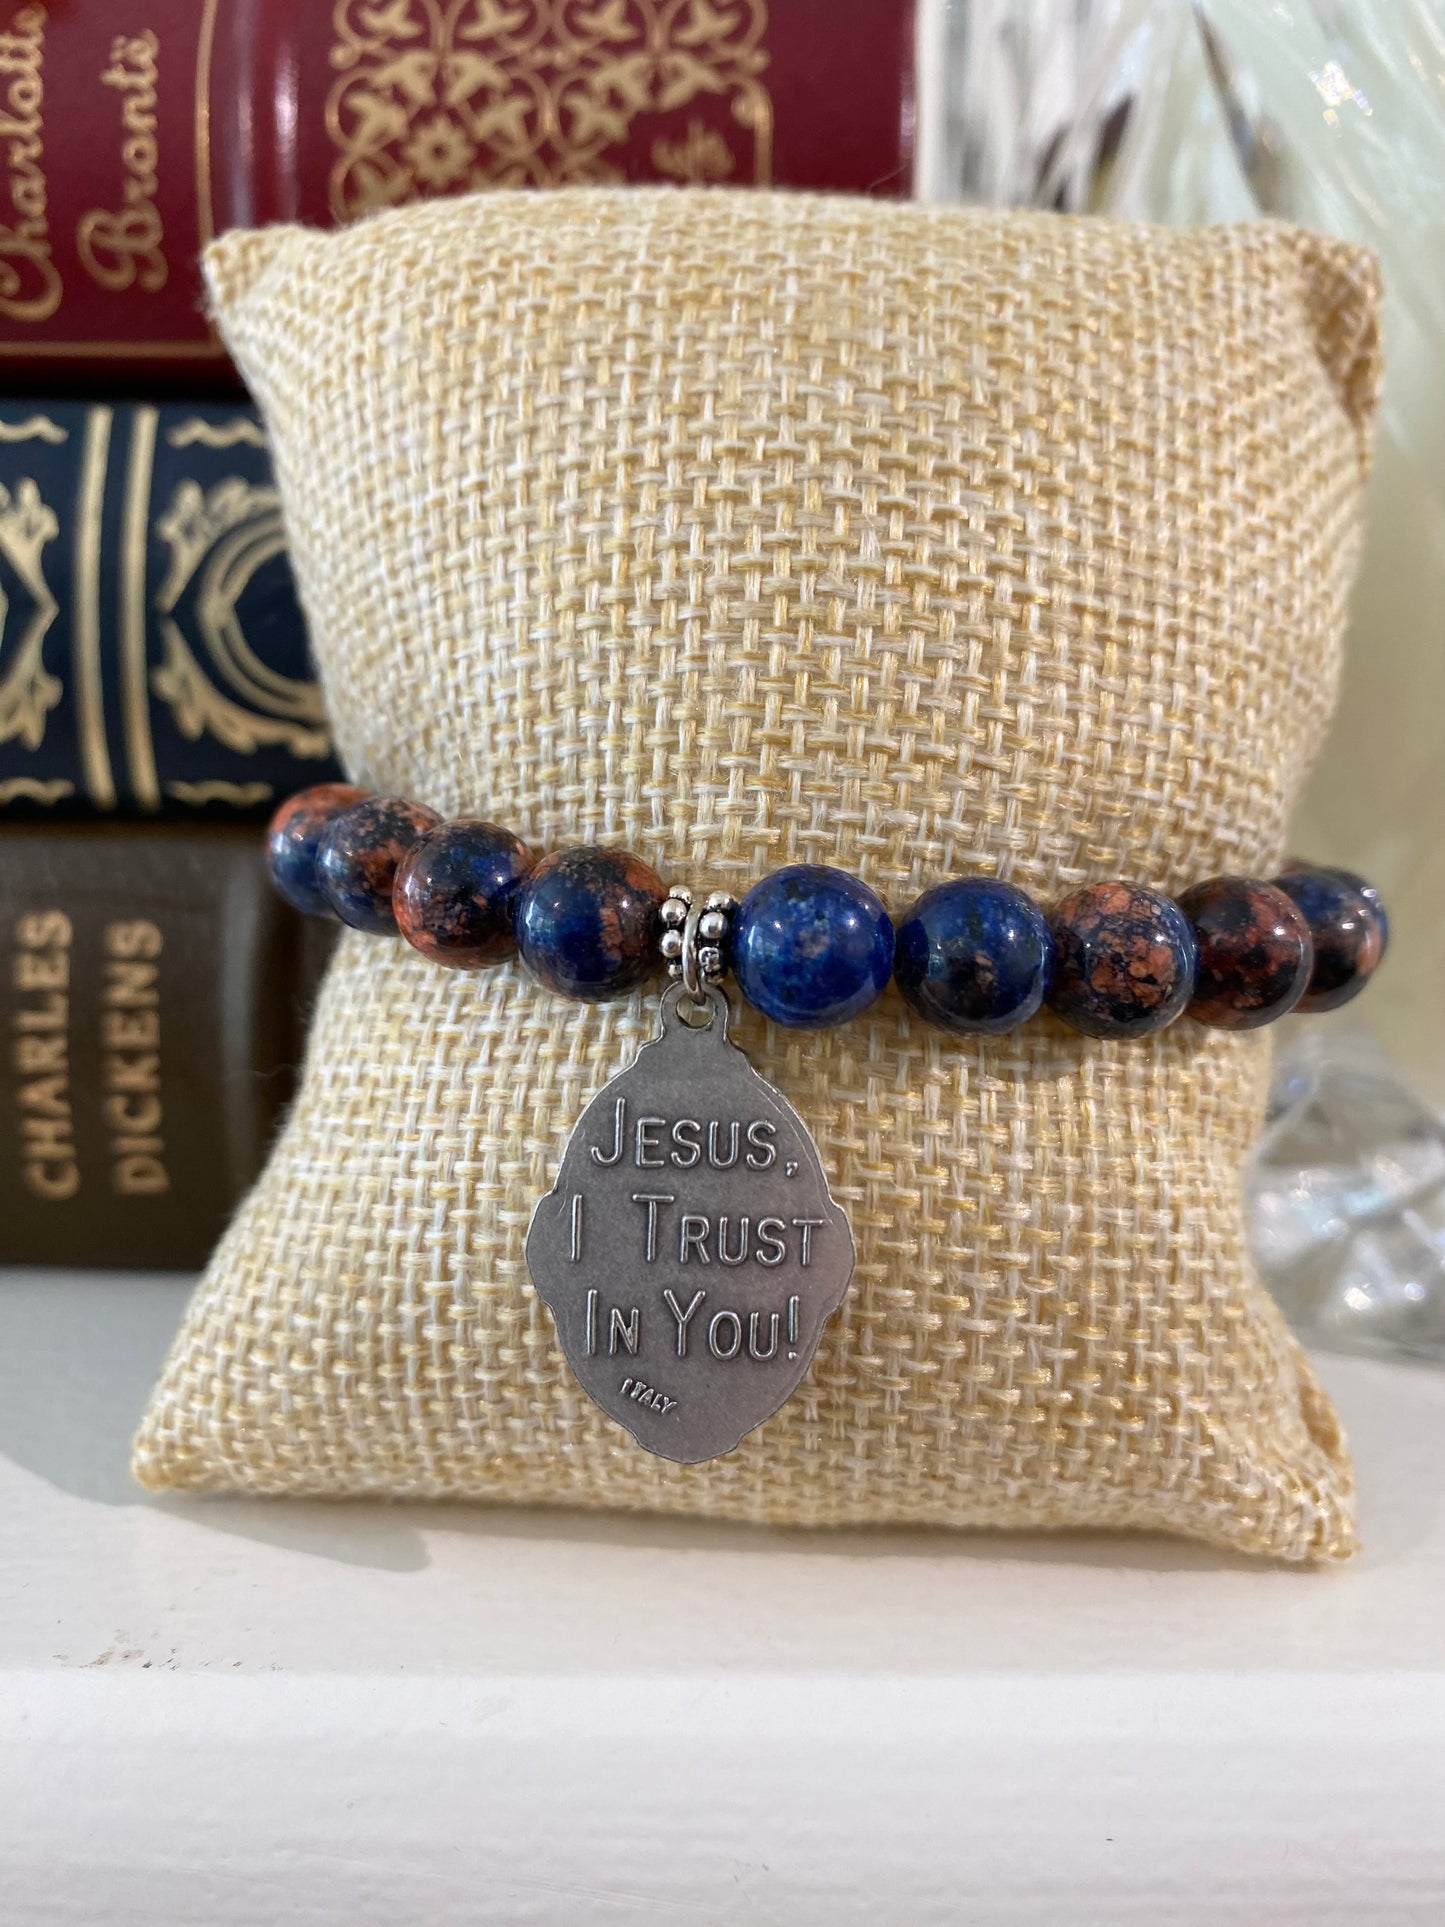 Jesus I Trust In You/Divine Mercy Stretch Bracelet